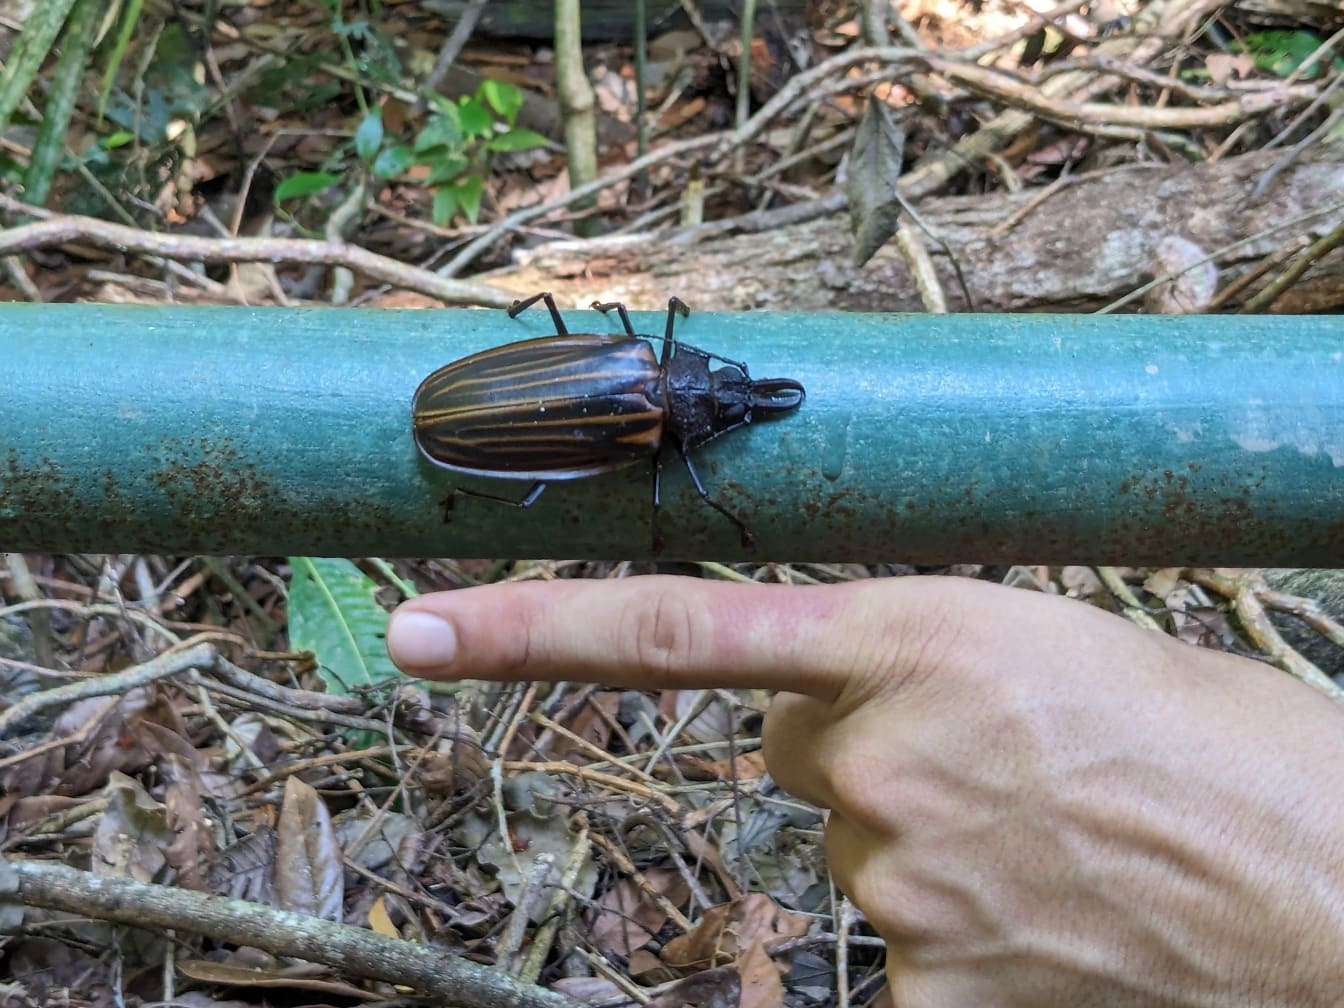 Büyük uzun boynuzlu böcek, (Macrodontia batesi), bir böceğin büyüklüğünü gösteren bir insan eli ile